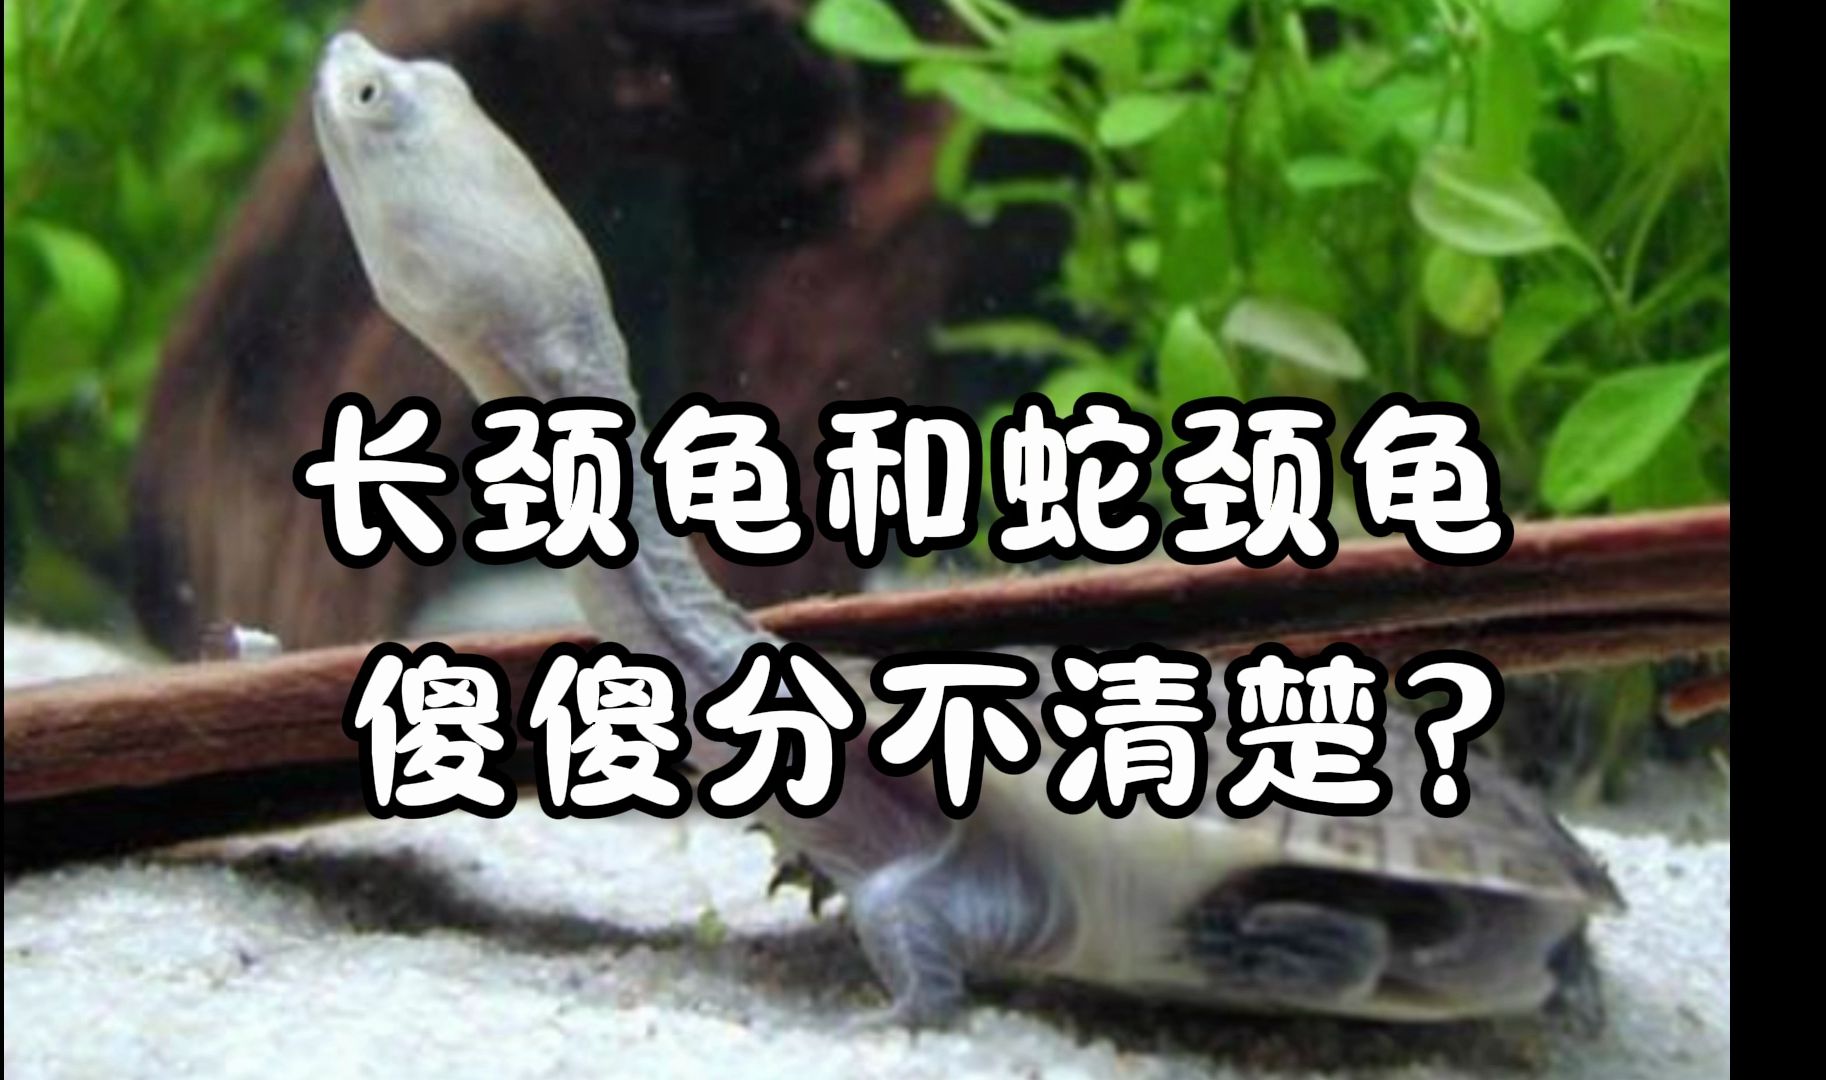 长寿三绝汤蛇龟电影图片